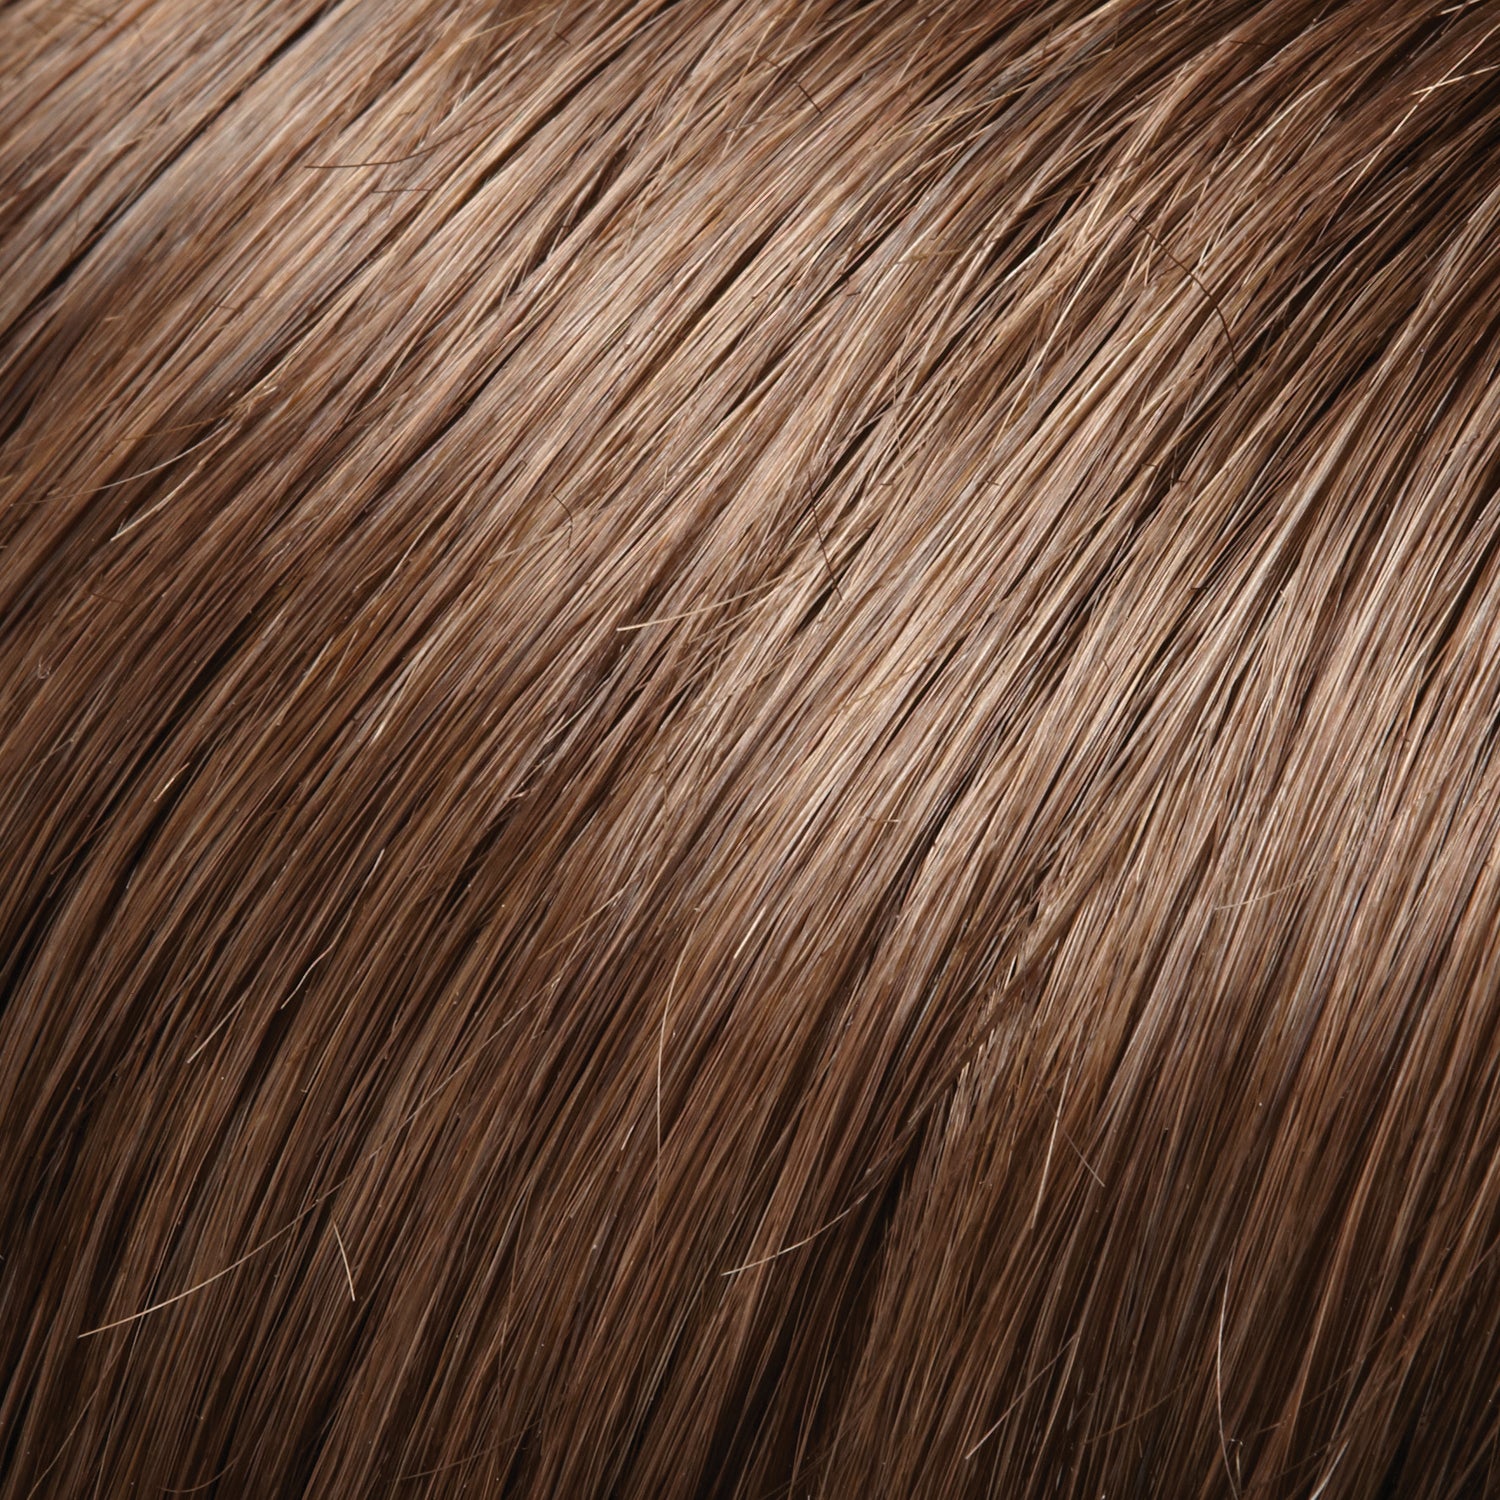 Top Blend human hair topper - Jon Renau *NEW*